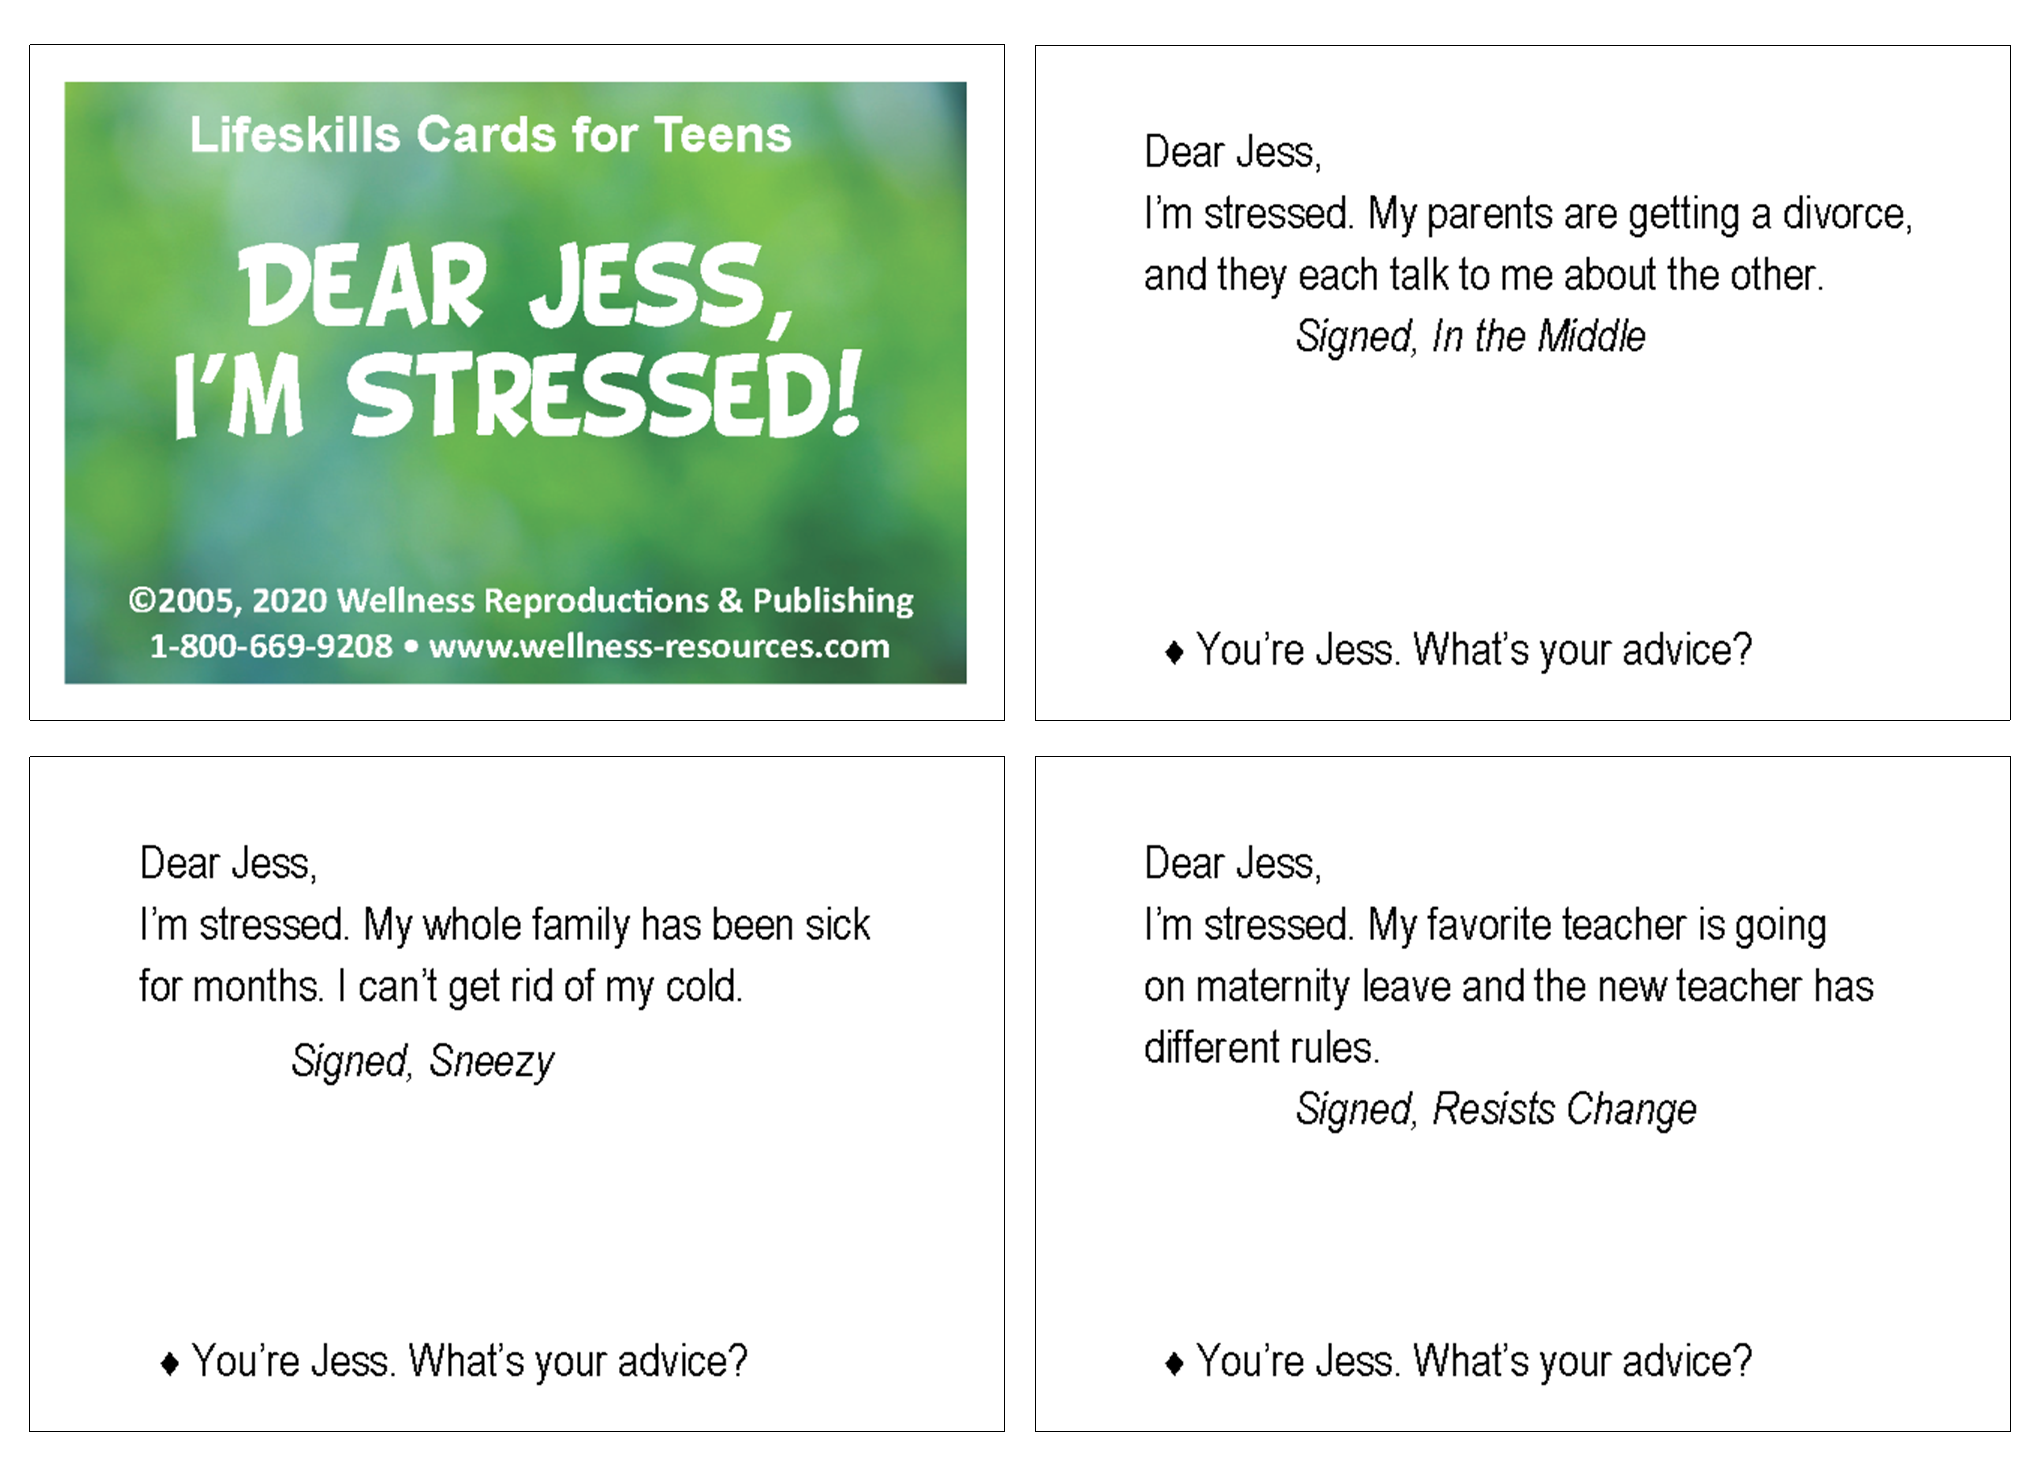 Lifeskills Cards for Teens: Dear Jess, I'm Stressed!